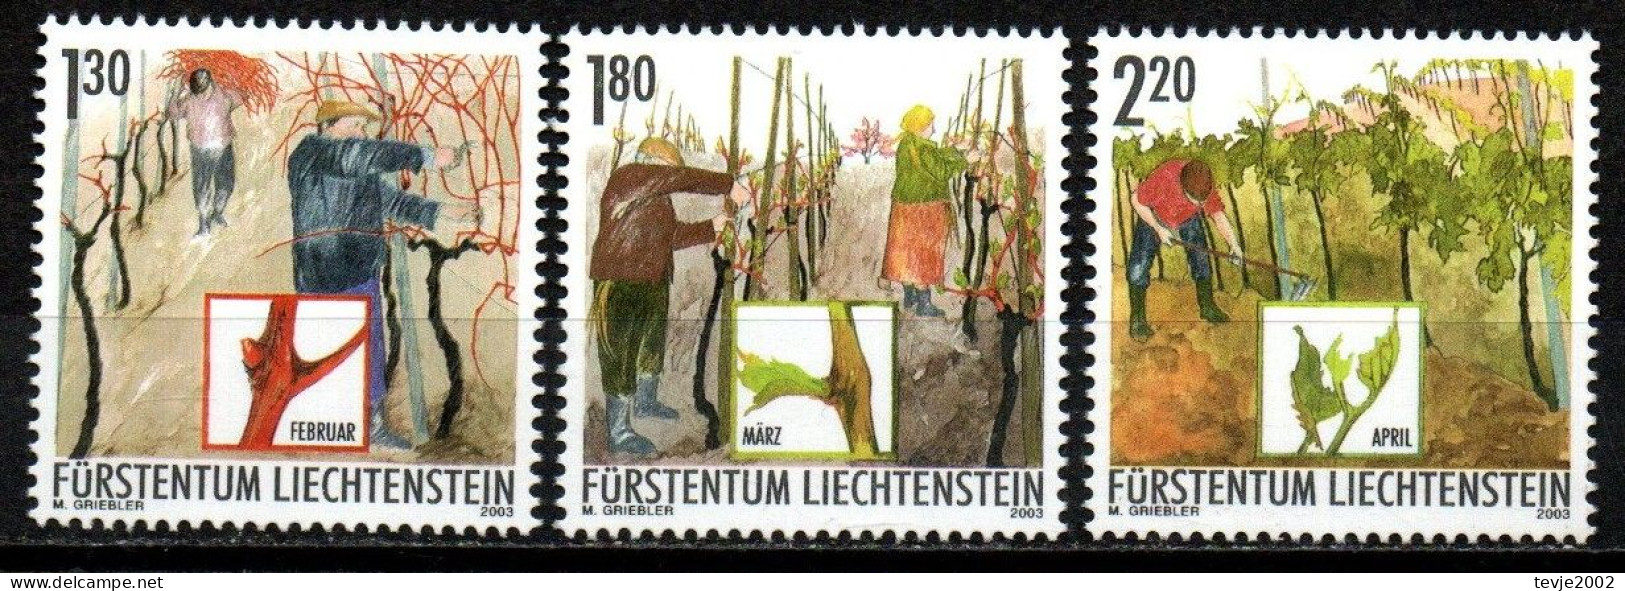 Liechtenstein 2003 - Mi.Nr. 1311 - 1313 - Postfrisch MNH - Weinbau Winzer Wine Growing Winemaker - Agricoltura